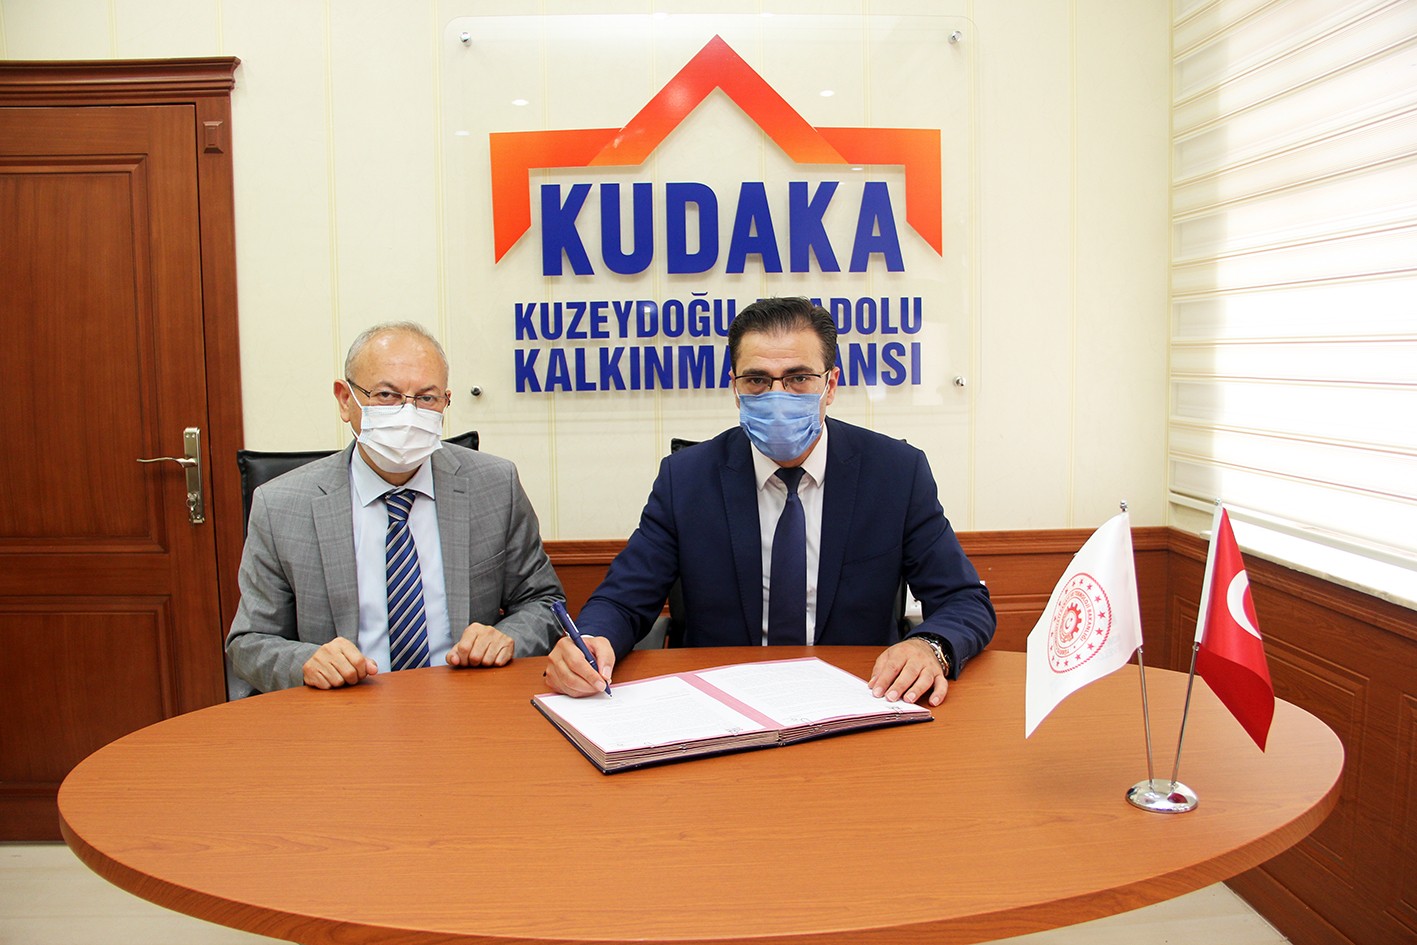 Erzurum’da soğuk ve yüksek rakım test merkezi için imzalar atıldı